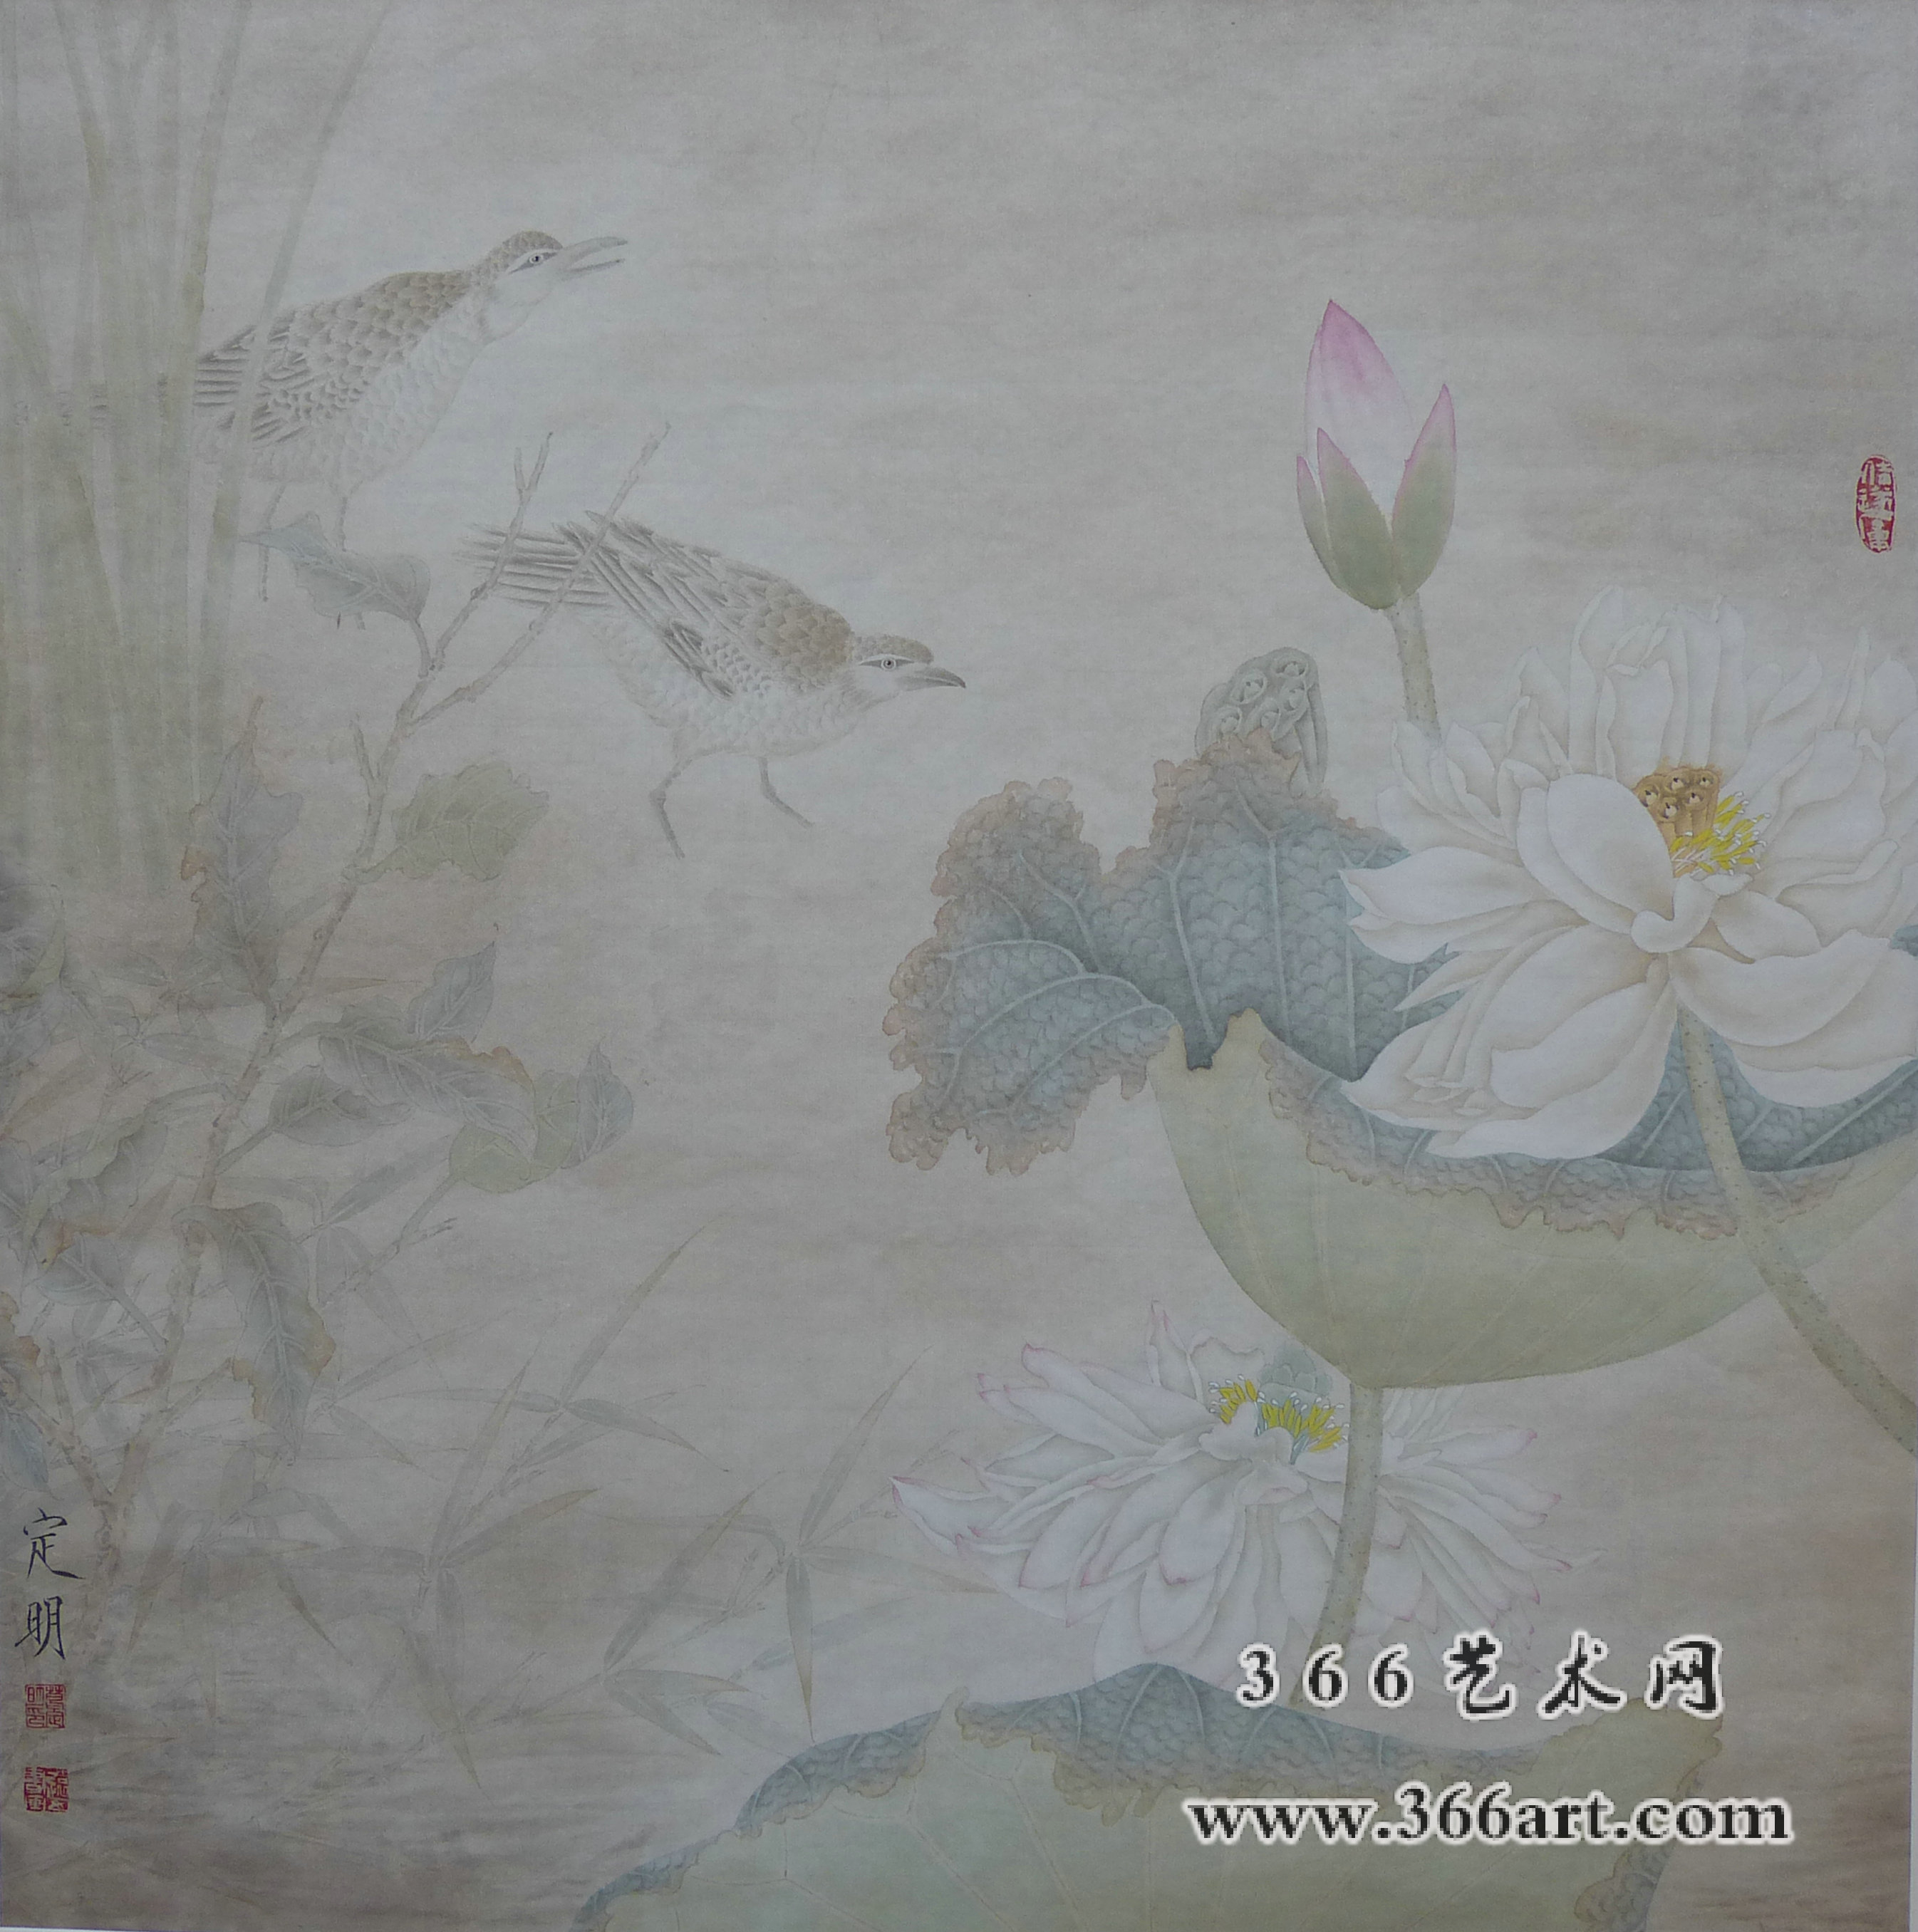 【中国水墨】葛定明 烟雨和风胭脂香 2014年 65 x 65cm